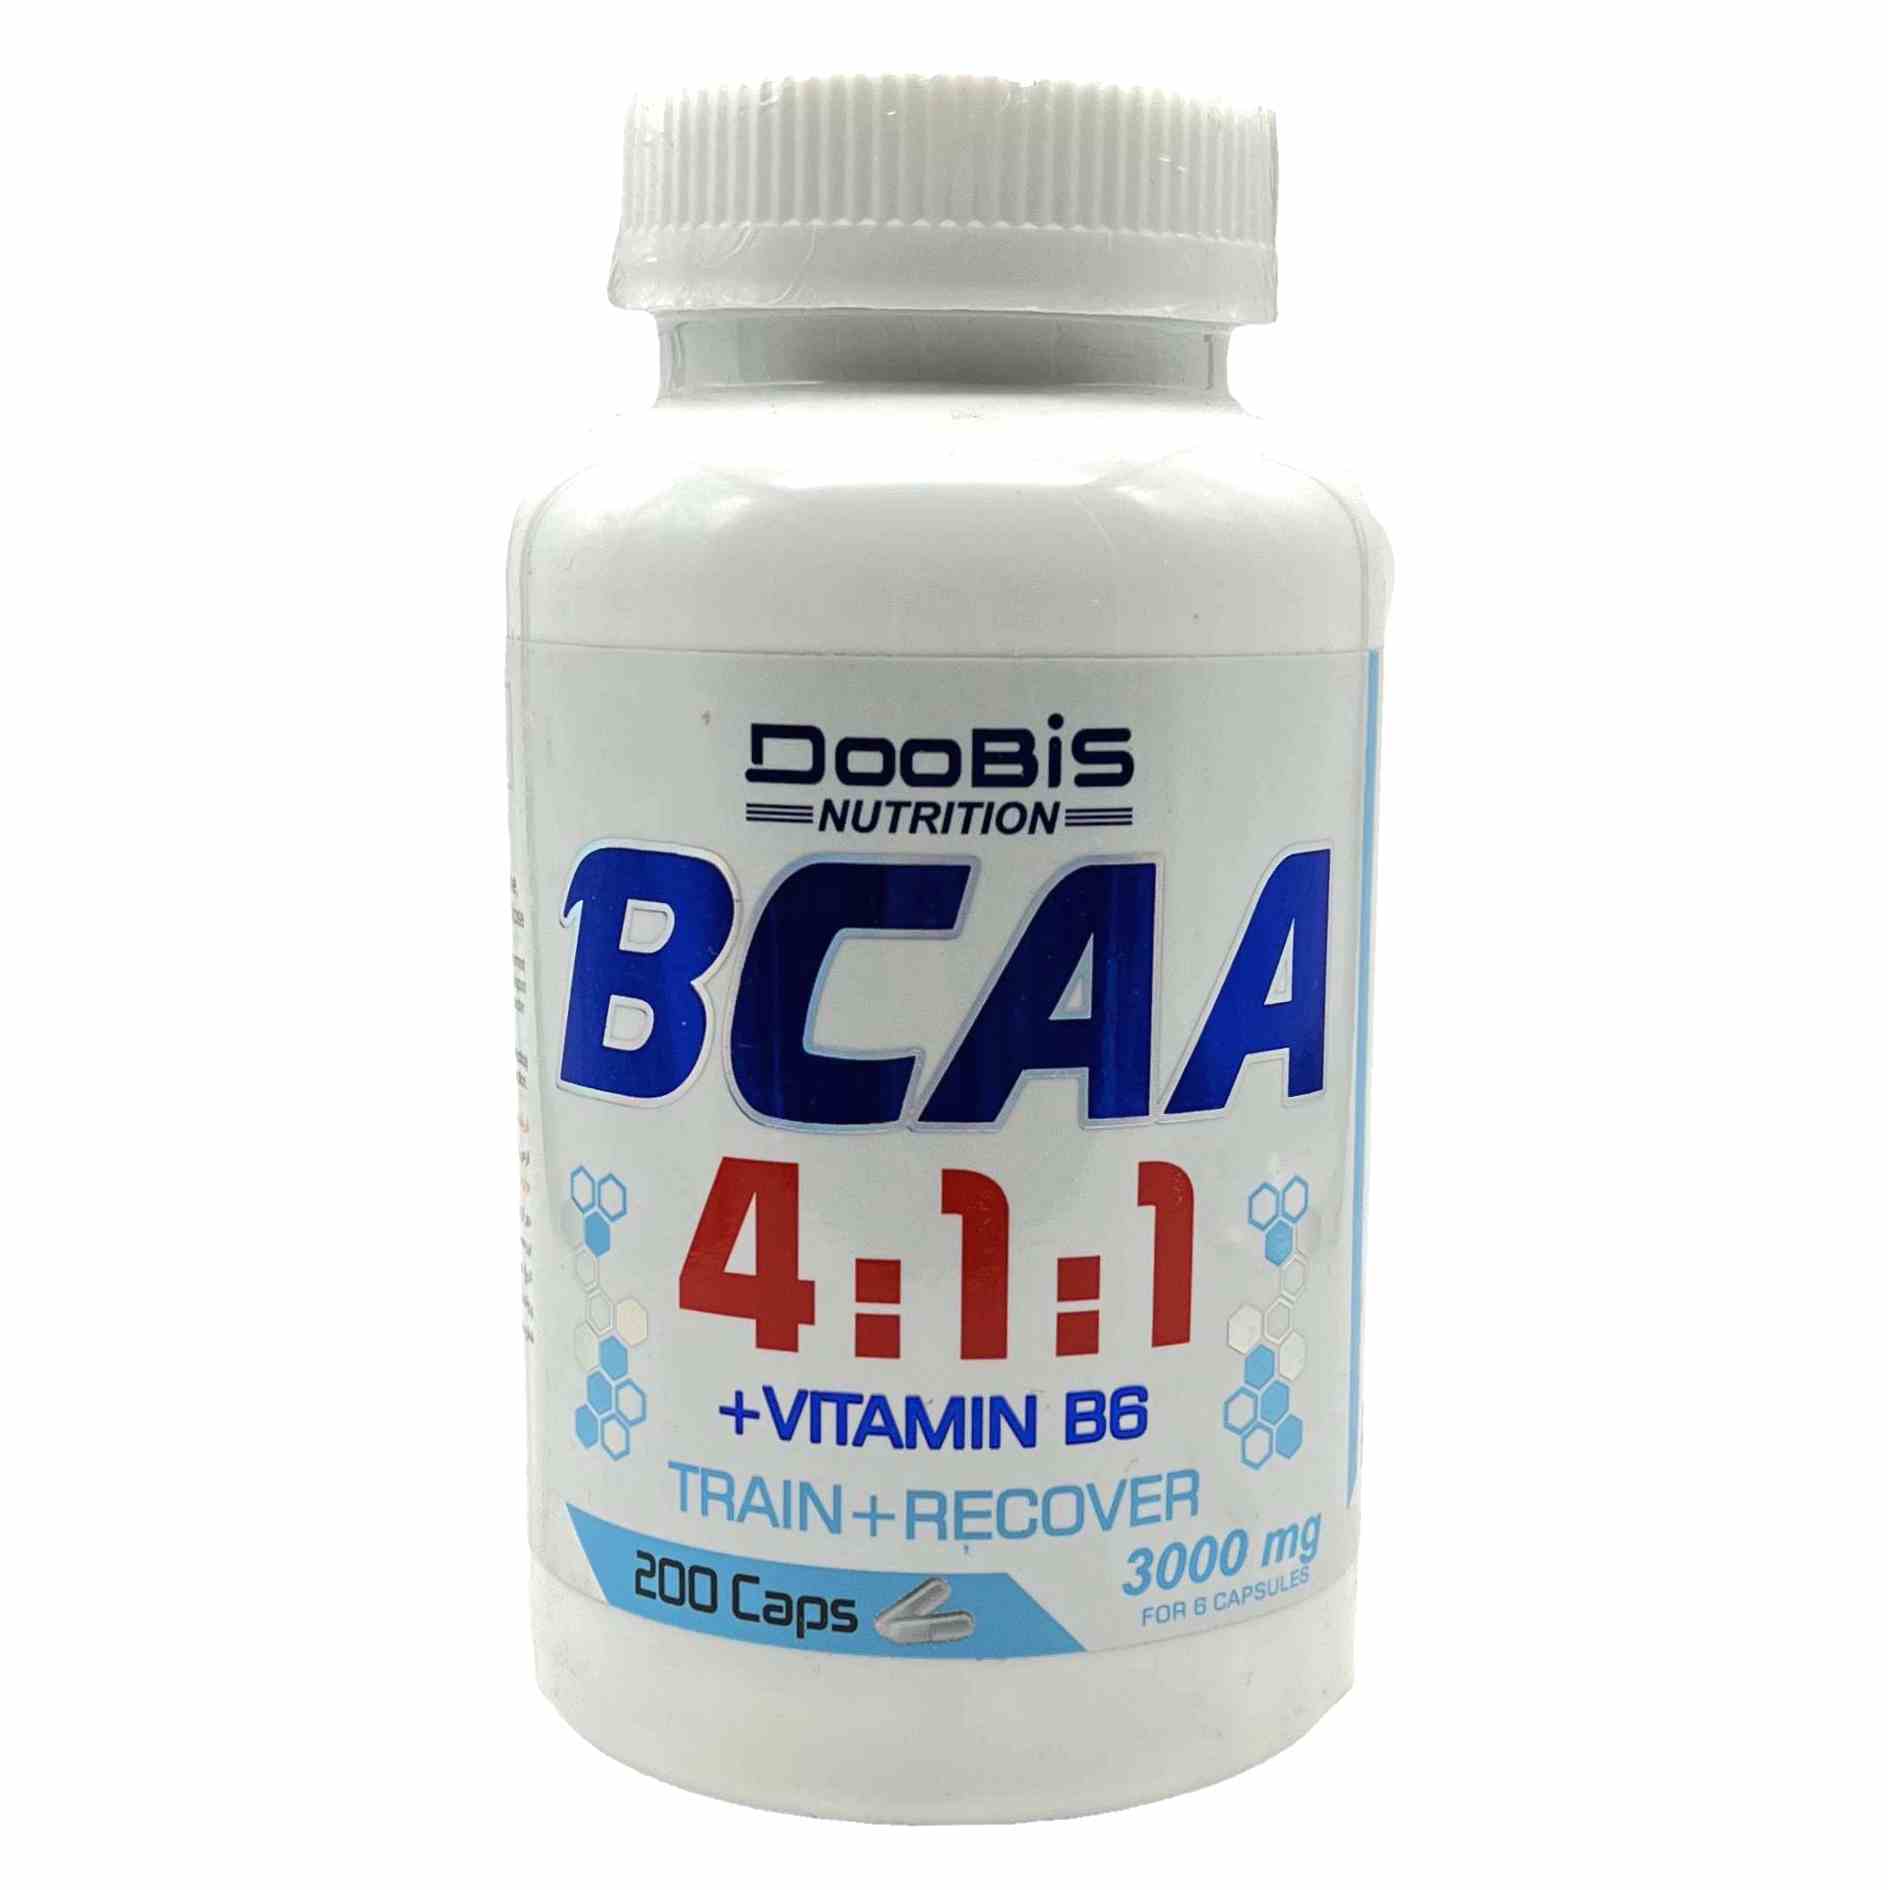 کپسول بی سی ای ای 4:1:1 3000 و ویتامین B6 دوبیس Doobis BCAA